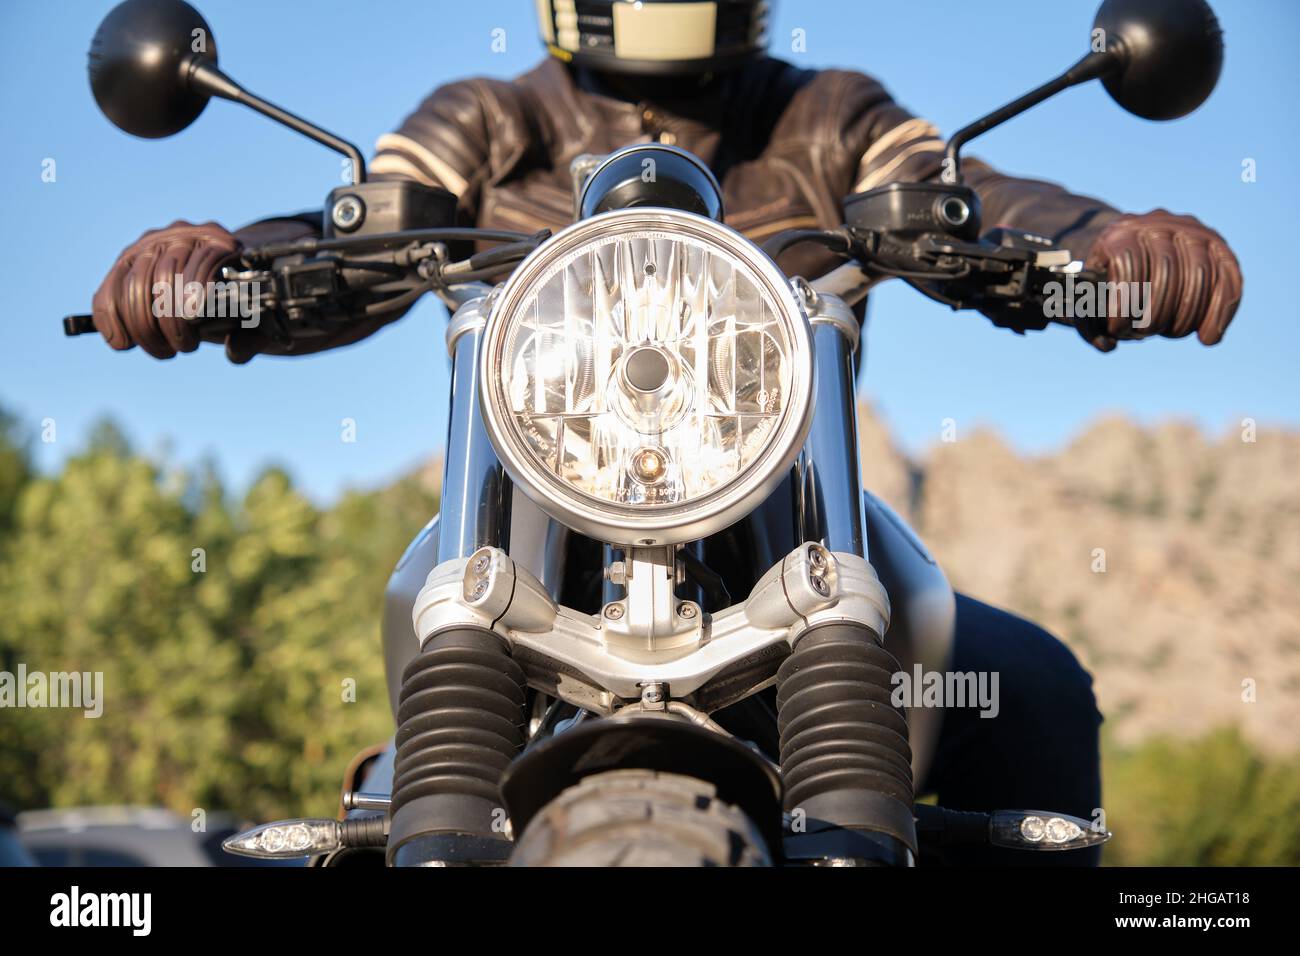 Moto avec phare allumé et personne méconnaissable Banque D'Images